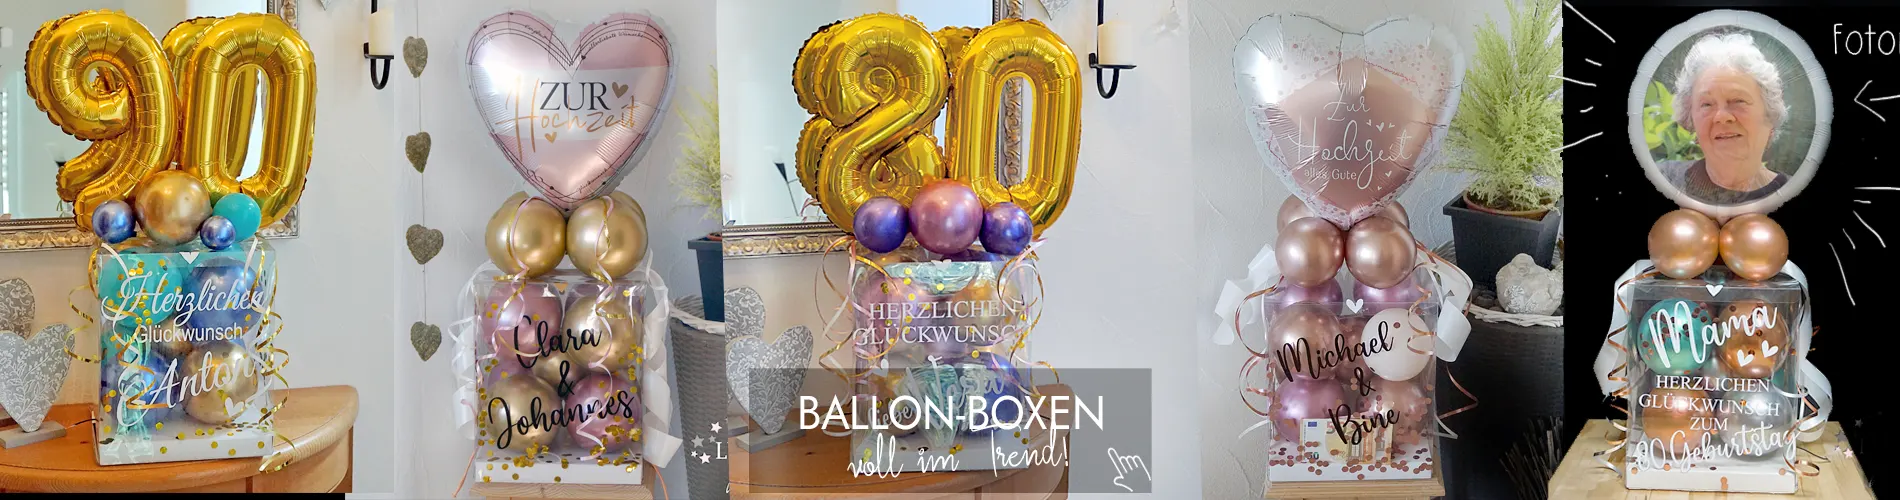 Verschiedene Ballonboxen für besondere Anlässe